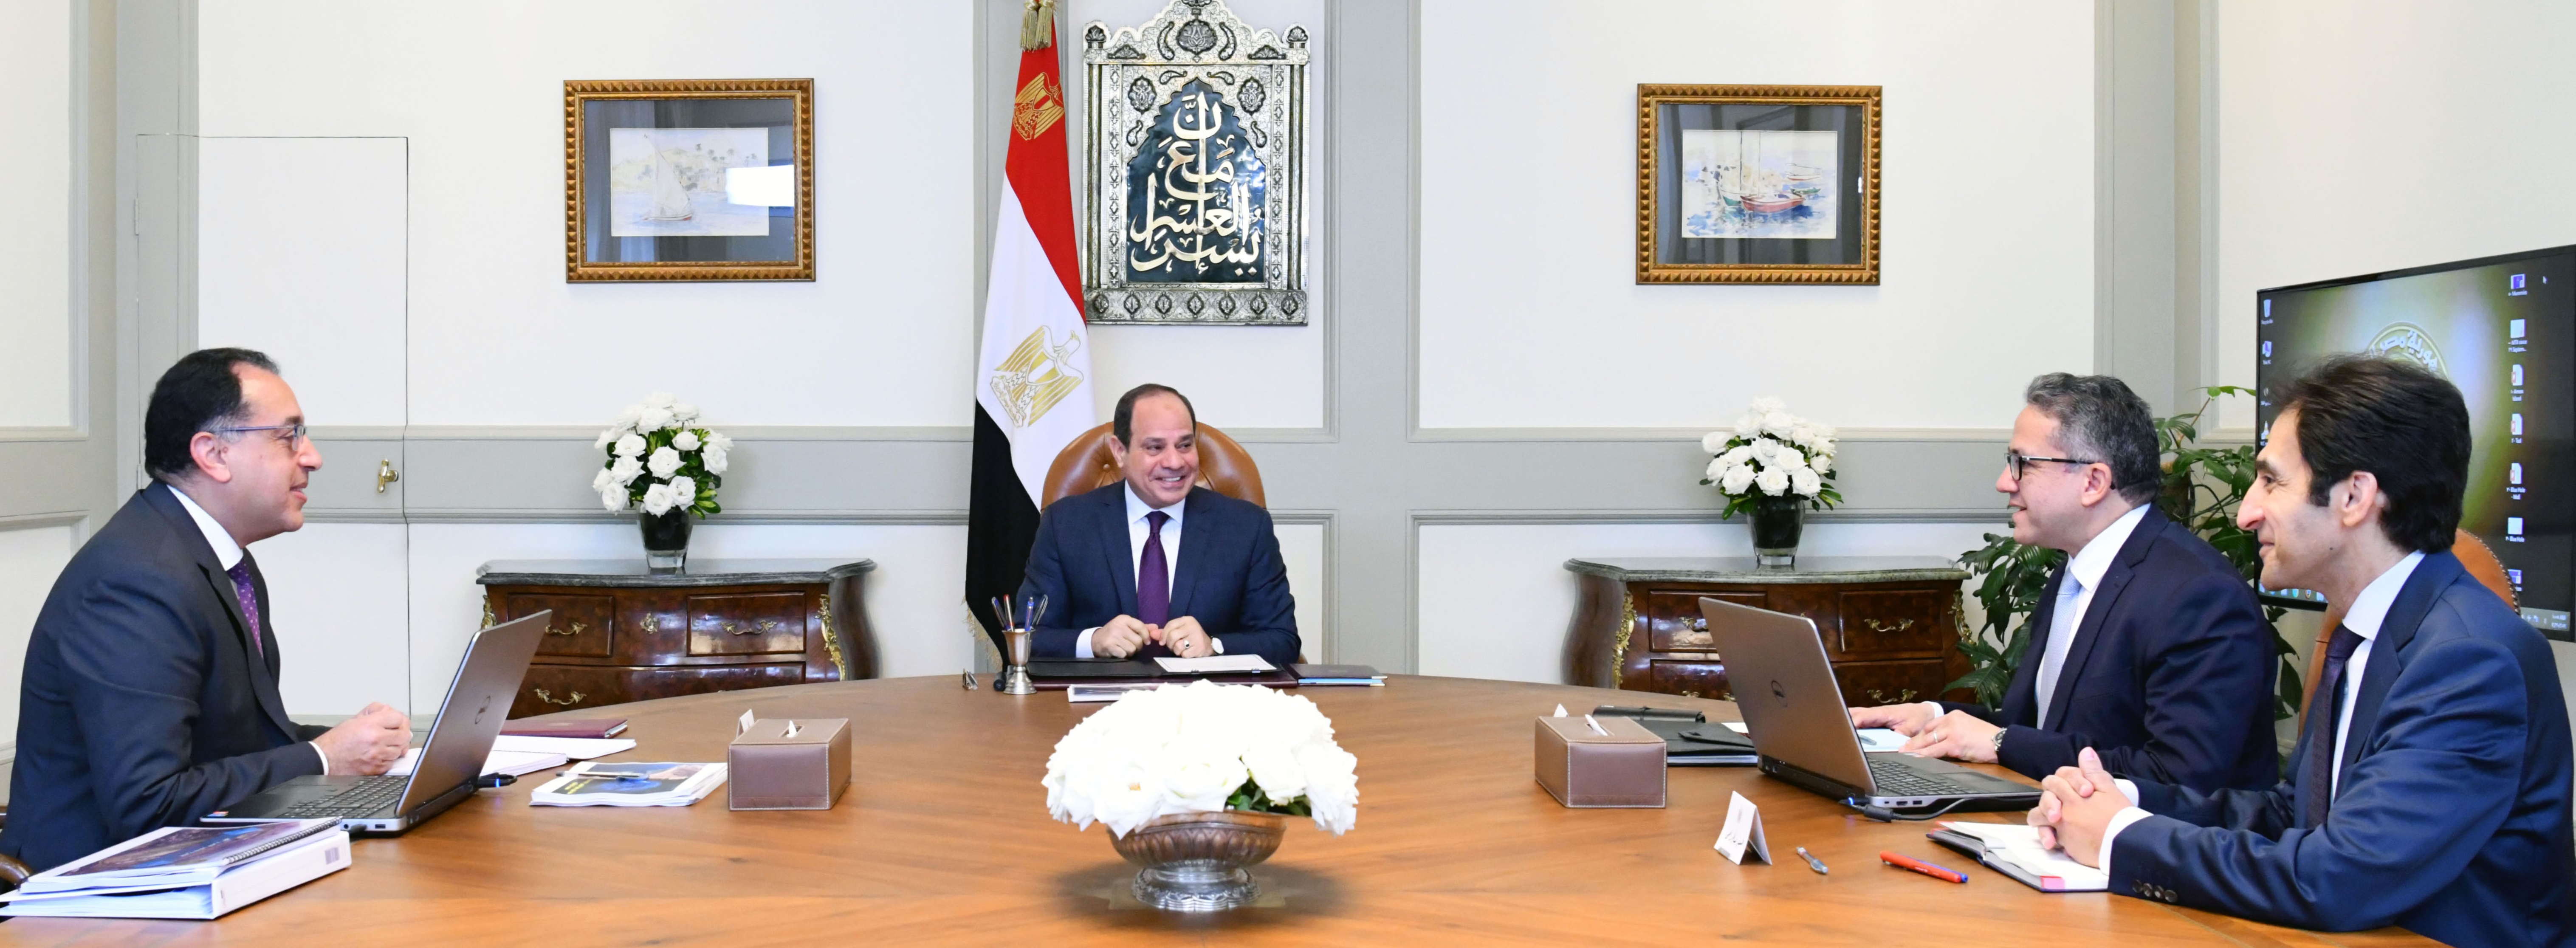 السيد الرئيس يجتمع مع السيد رئيس مجلس الوزراء، والسيد وزير السياحة والآثار